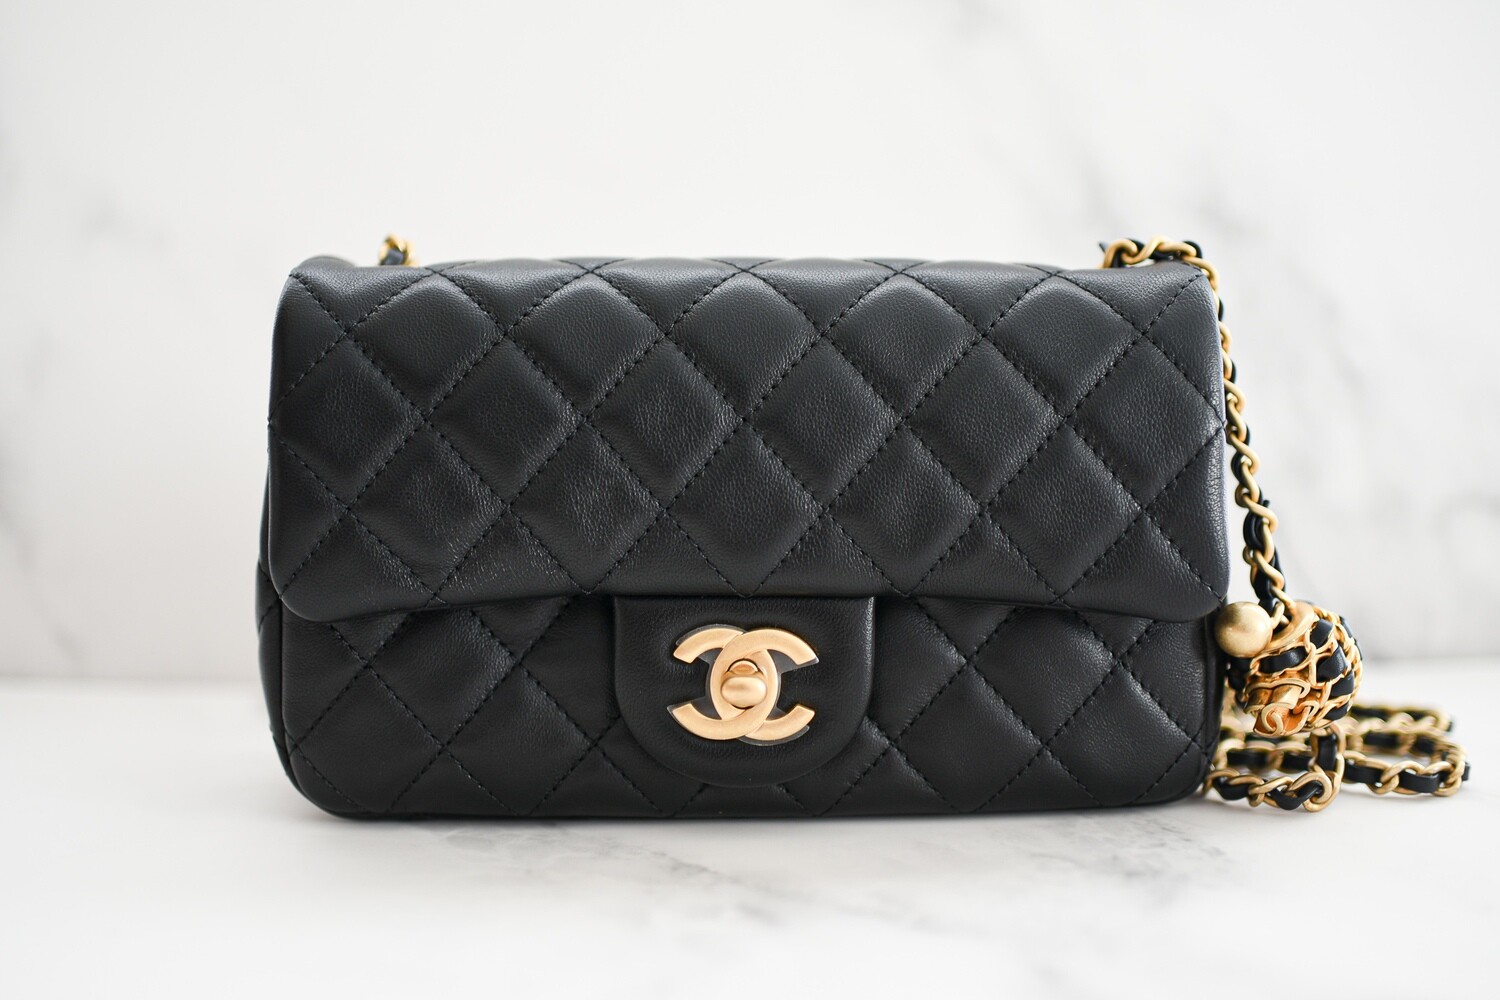 Chanel Pearl Crush Square Mini, Black Lambskin with Matte Gold Hardware,  New in Box GA003 - Julia Rose Boston